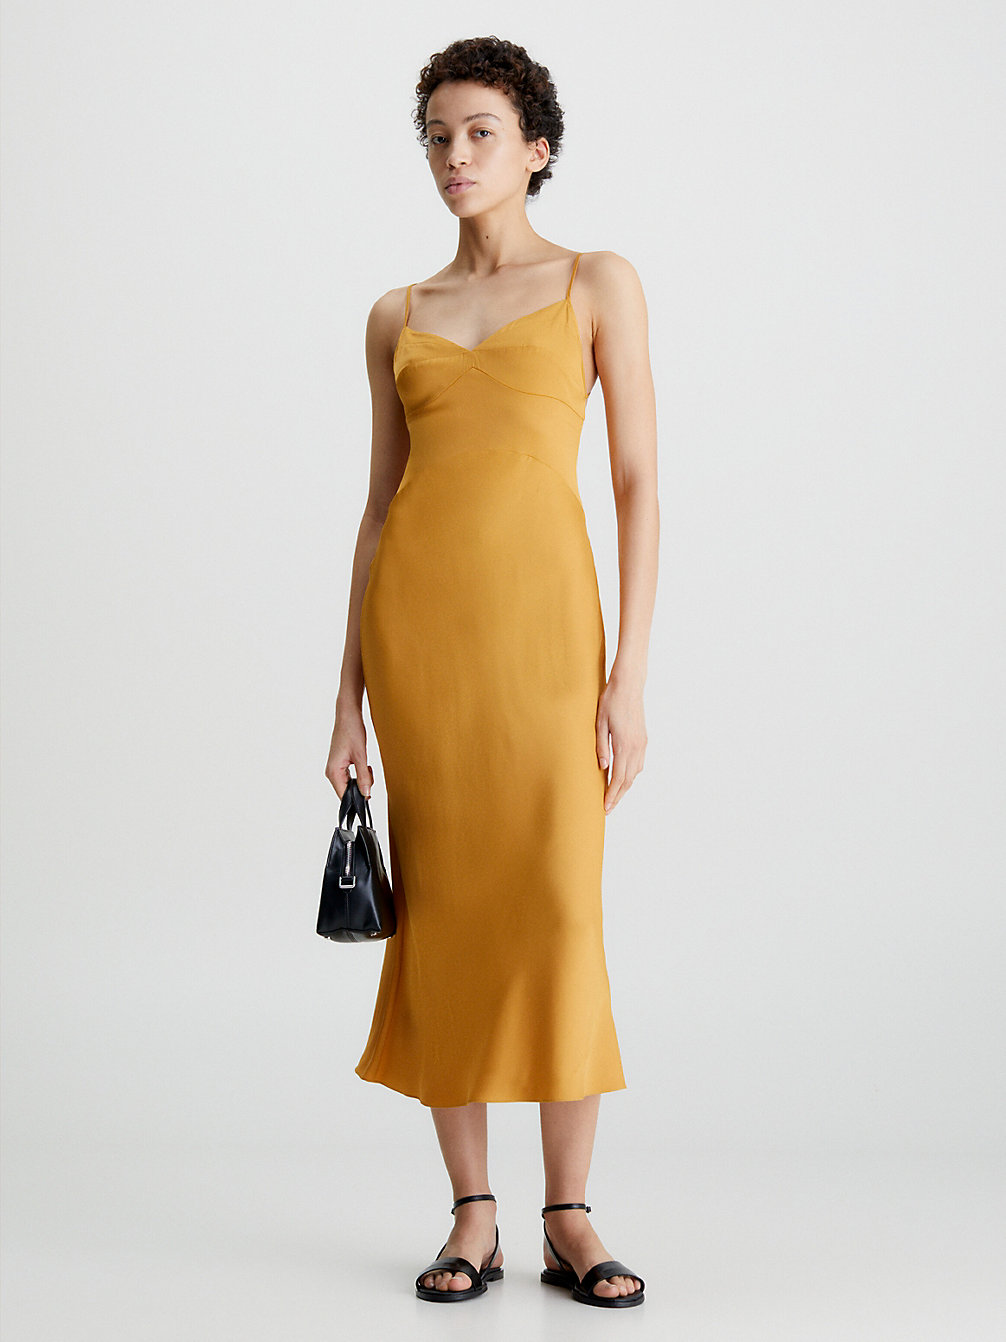 VINTAGE GOLD Slim Midi Satin Slip Dress undefined women Calvin Klein